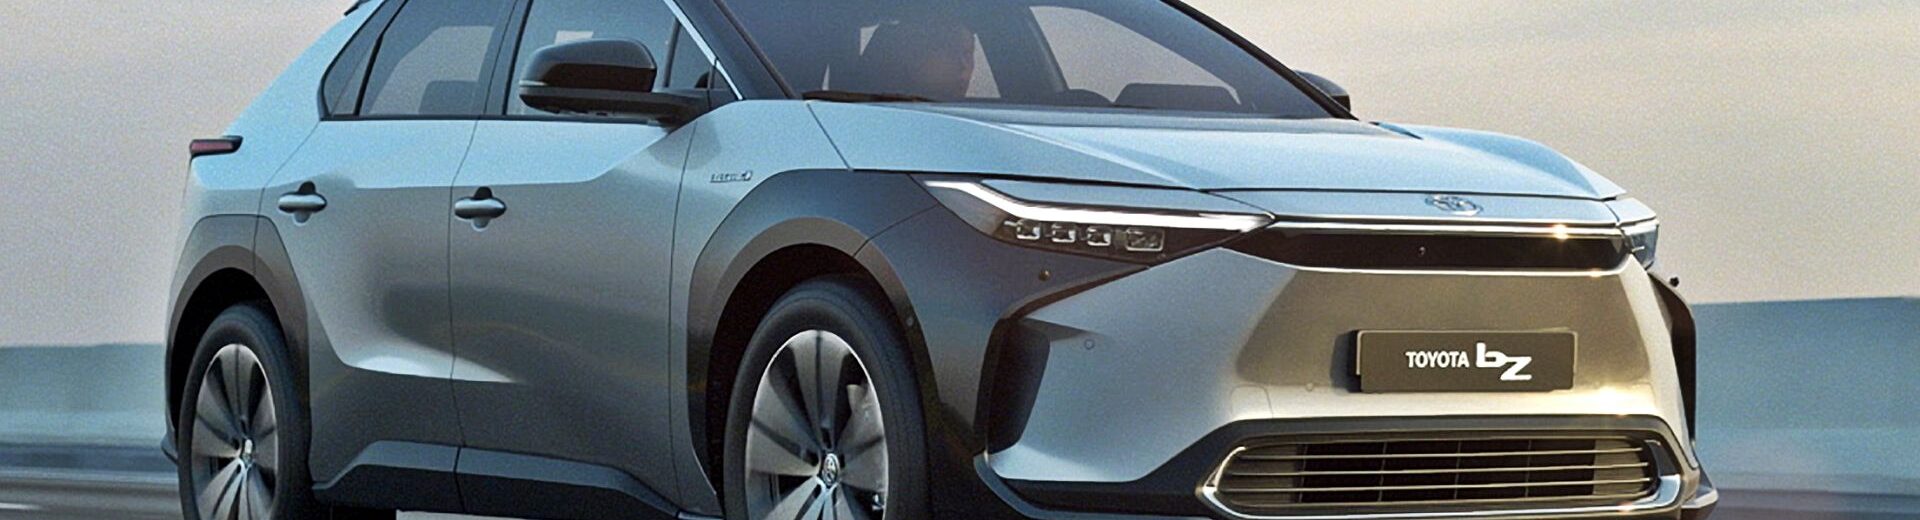 Toyota zdradziła szczegóły nowych baterii, które mają osiągać nawet 1500 km zasięgu